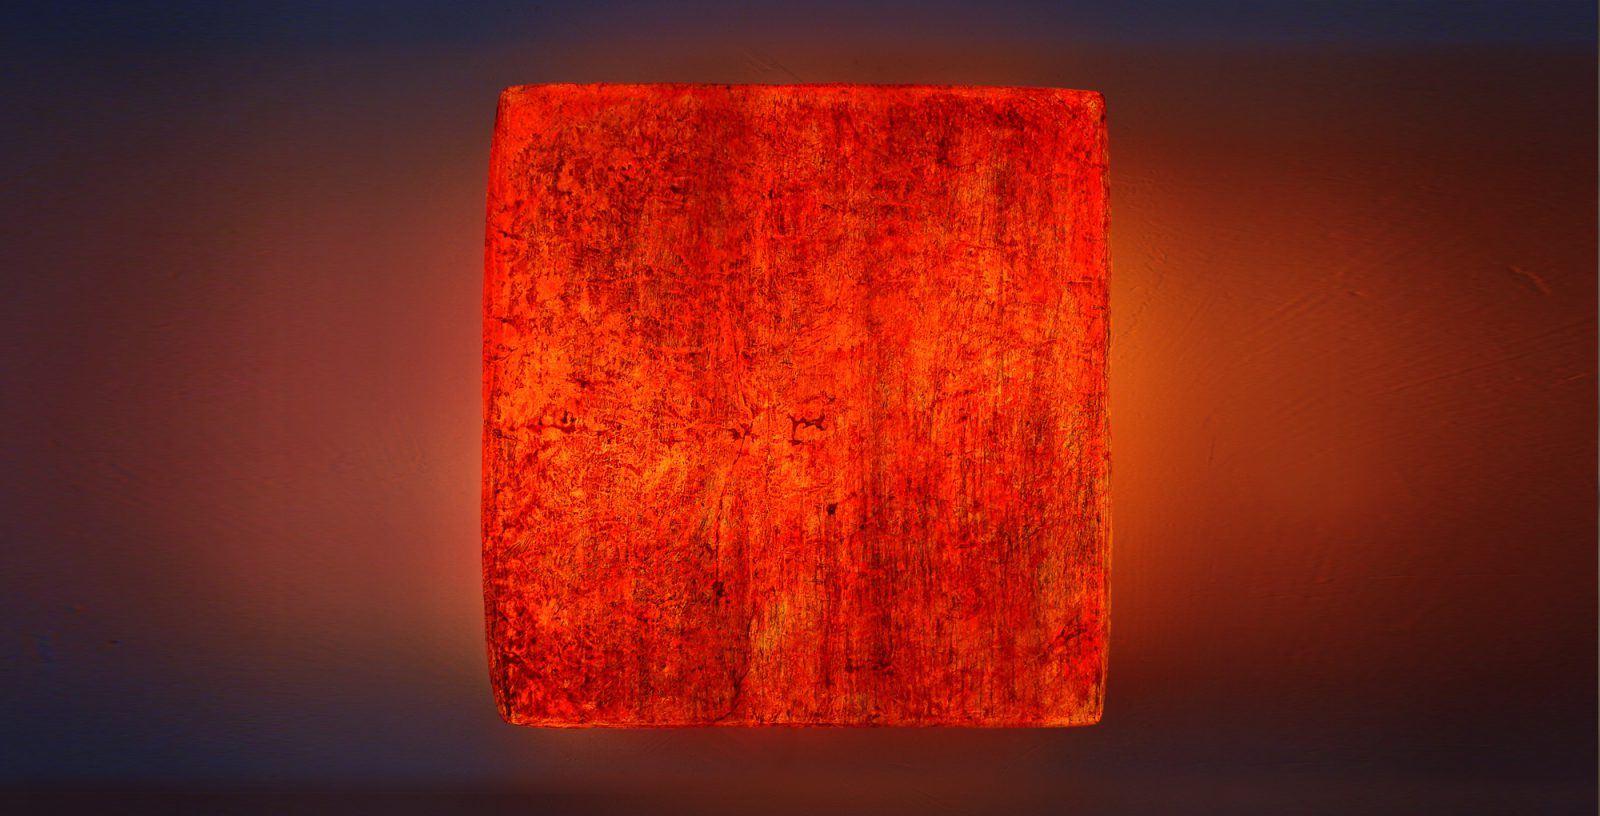 Leuchtobjekt - Ölfarbe auf Papier, 70 x 70 x 20 cm I 2015